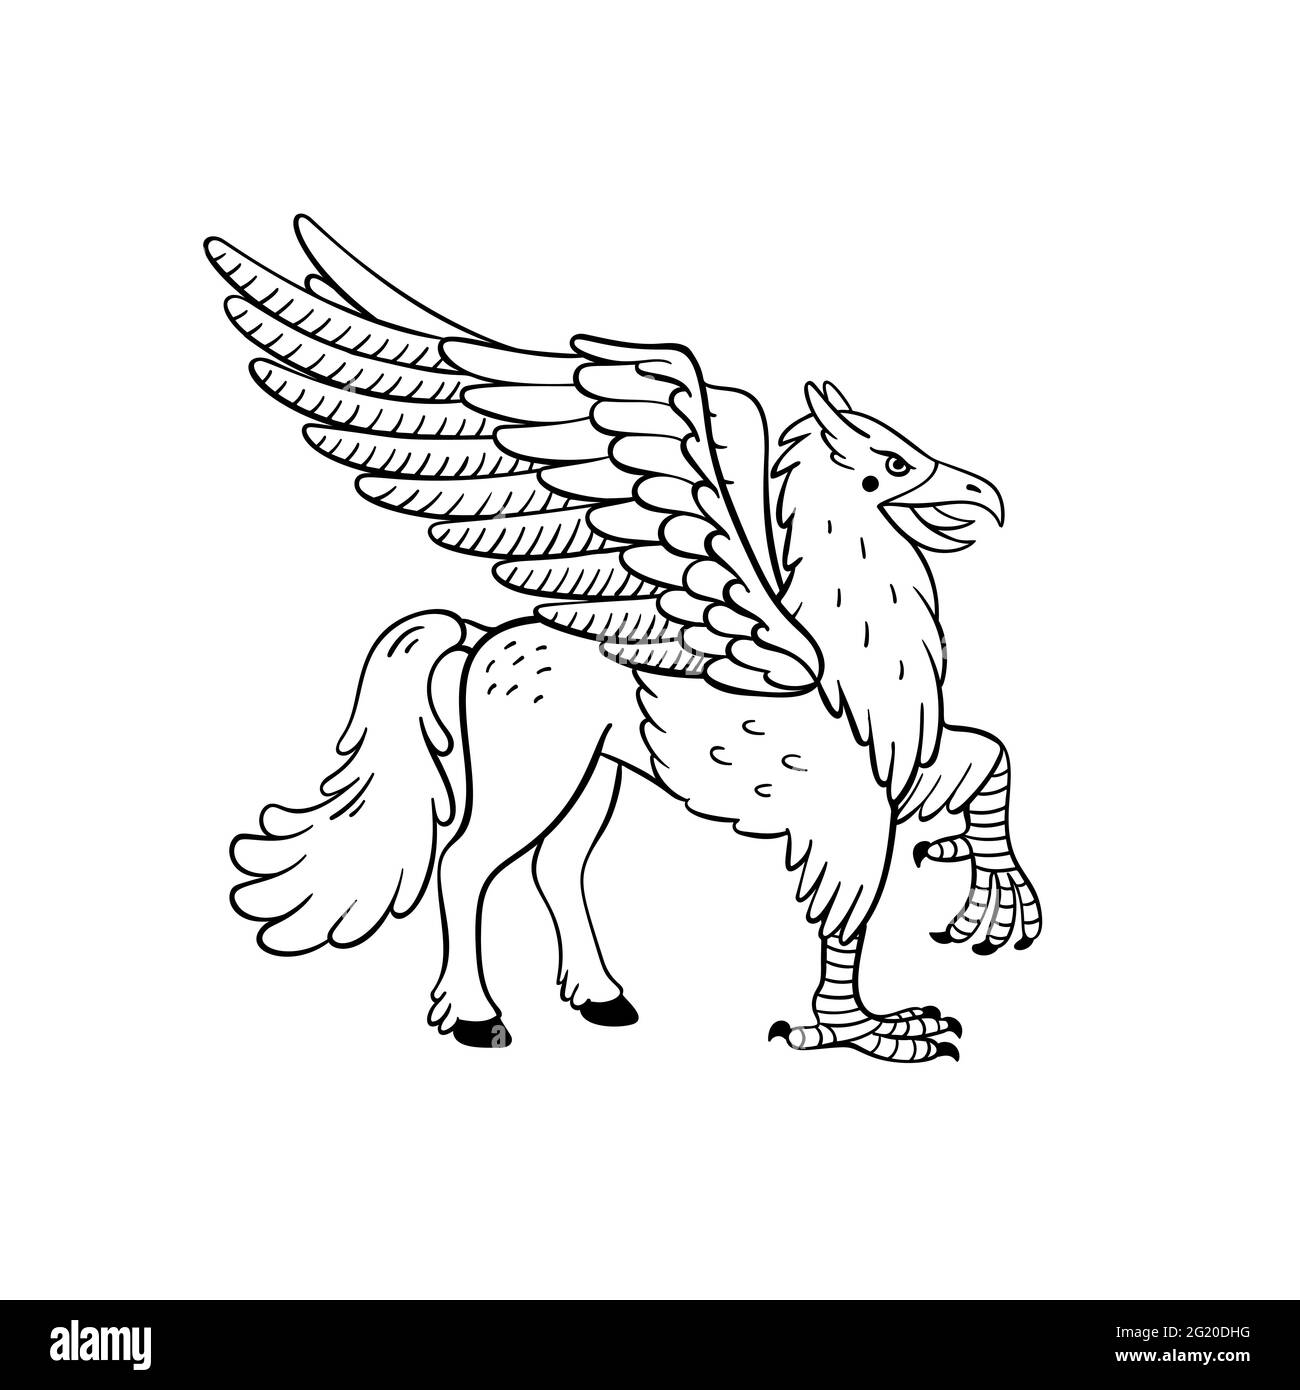 Ensemble de créatures magiques. Animal mythologique - hippogriff. Illustration vectorielle noire et blanche de style Doodle isolée sur fond blanc. Motif tatouage Illustration de Vecteur